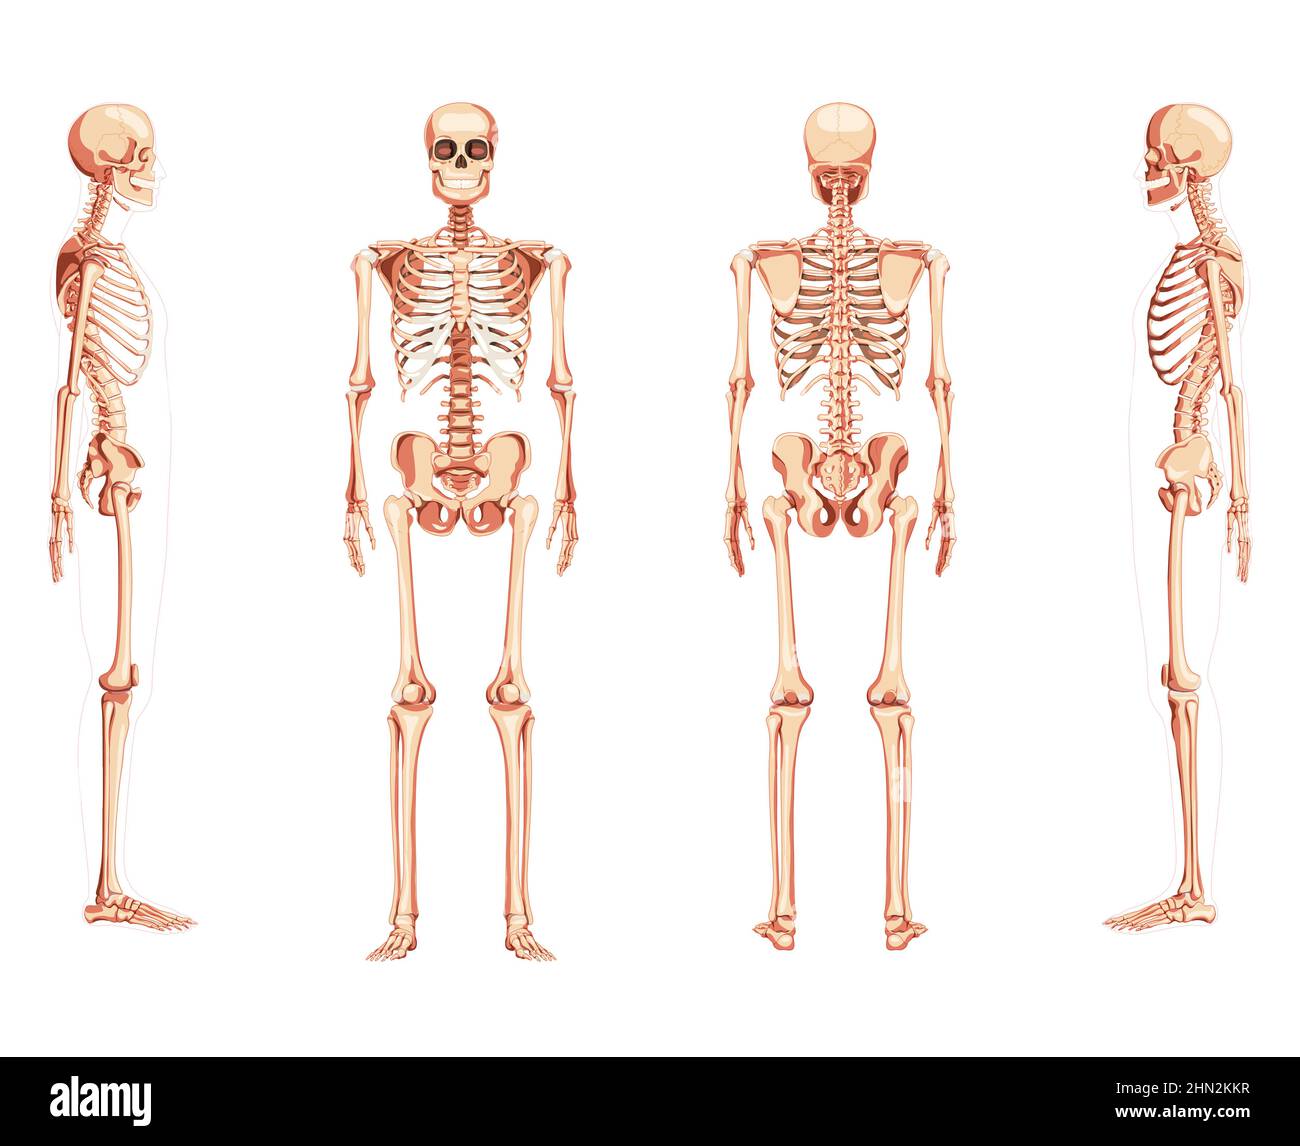 Set von Skelett Human Vorder-Rückseite Ansicht mit zwei Arm Posen ventral, lateral, und dorsal Ansichten. Realistisches, flaches natürliches Farbkonzept Vektordarstellung der Anatomie auf weißem Hintergrund isoliert Stock Vektor